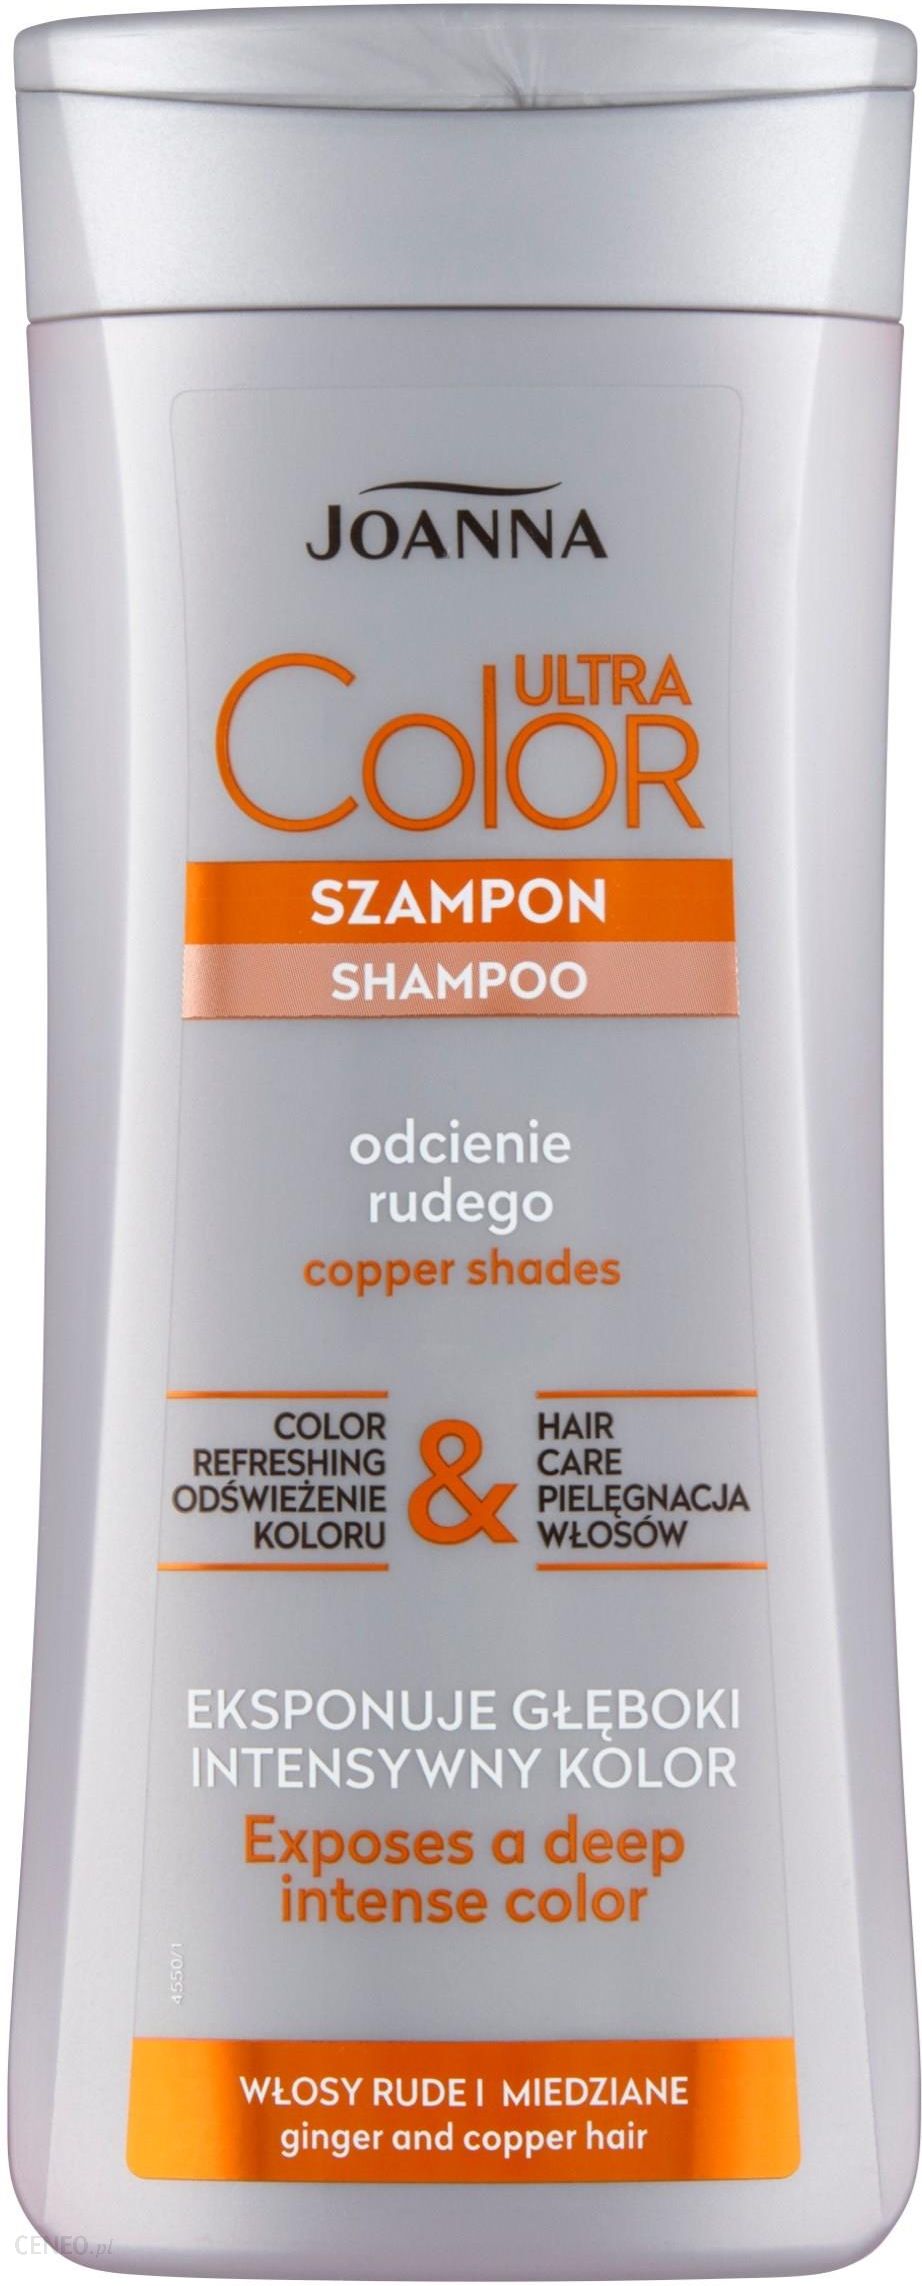 szampon do rudych włosów farbowanych wizaz